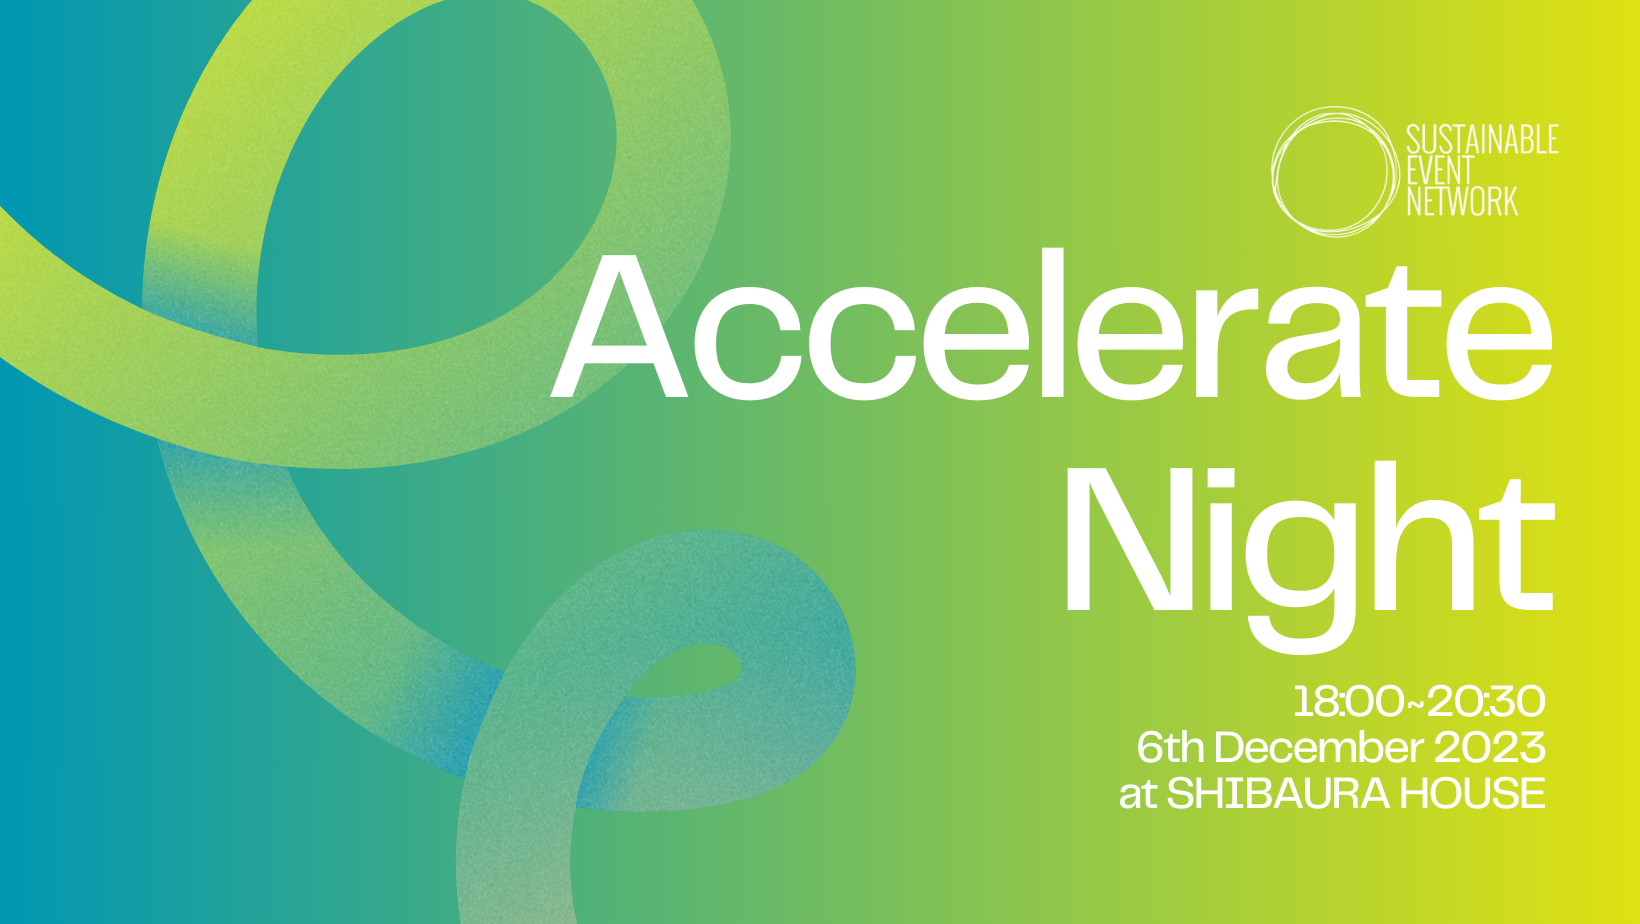 【12月6日開催】サーキュラーエコノミーへの移行を促進するイベント「Accelerating Night」を開催